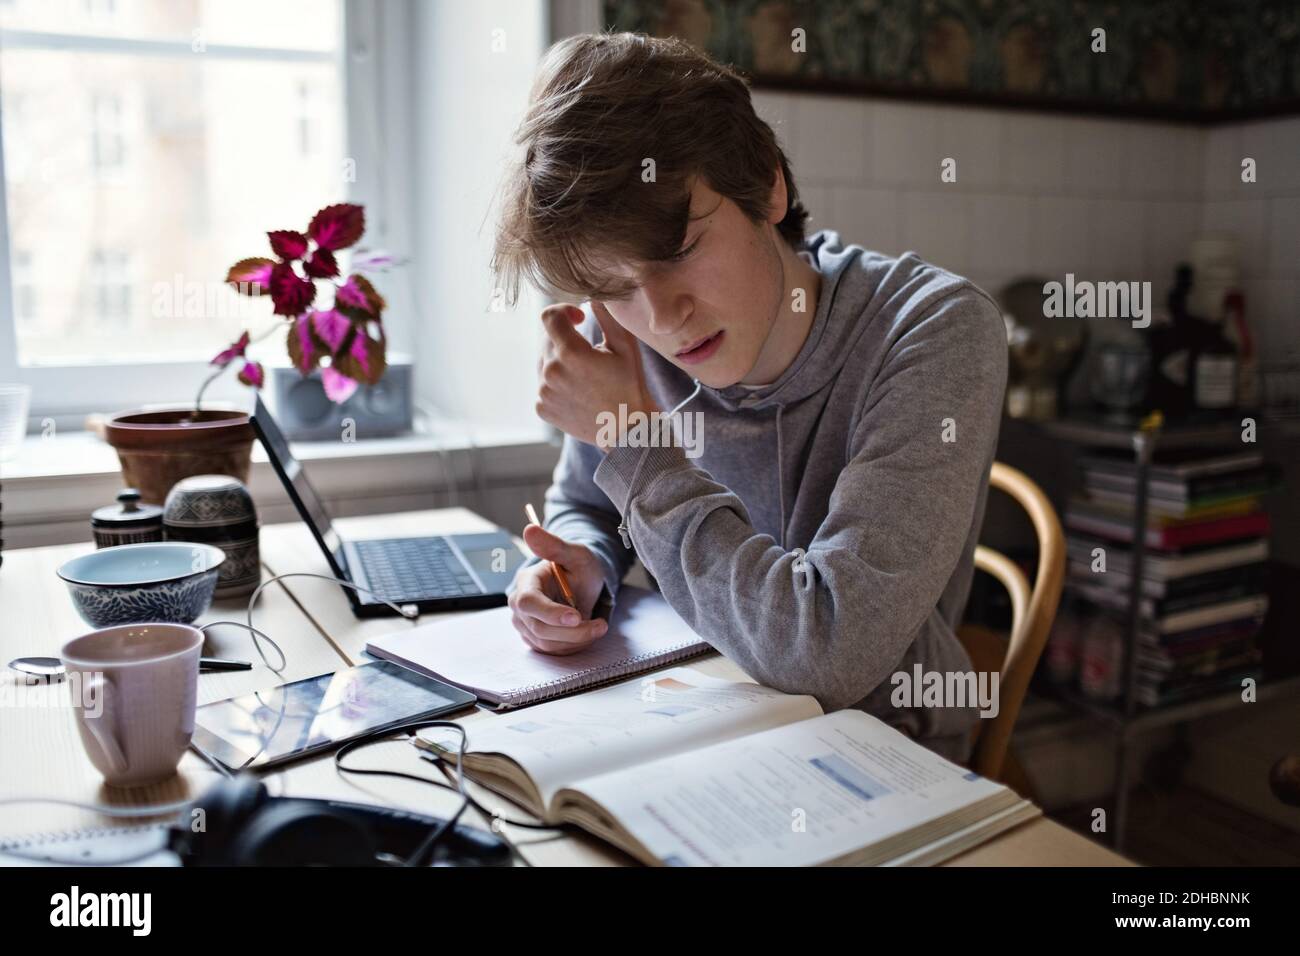 Un adolescente serio leyendo un libro mientras hace la tarea en casa Foto de stock